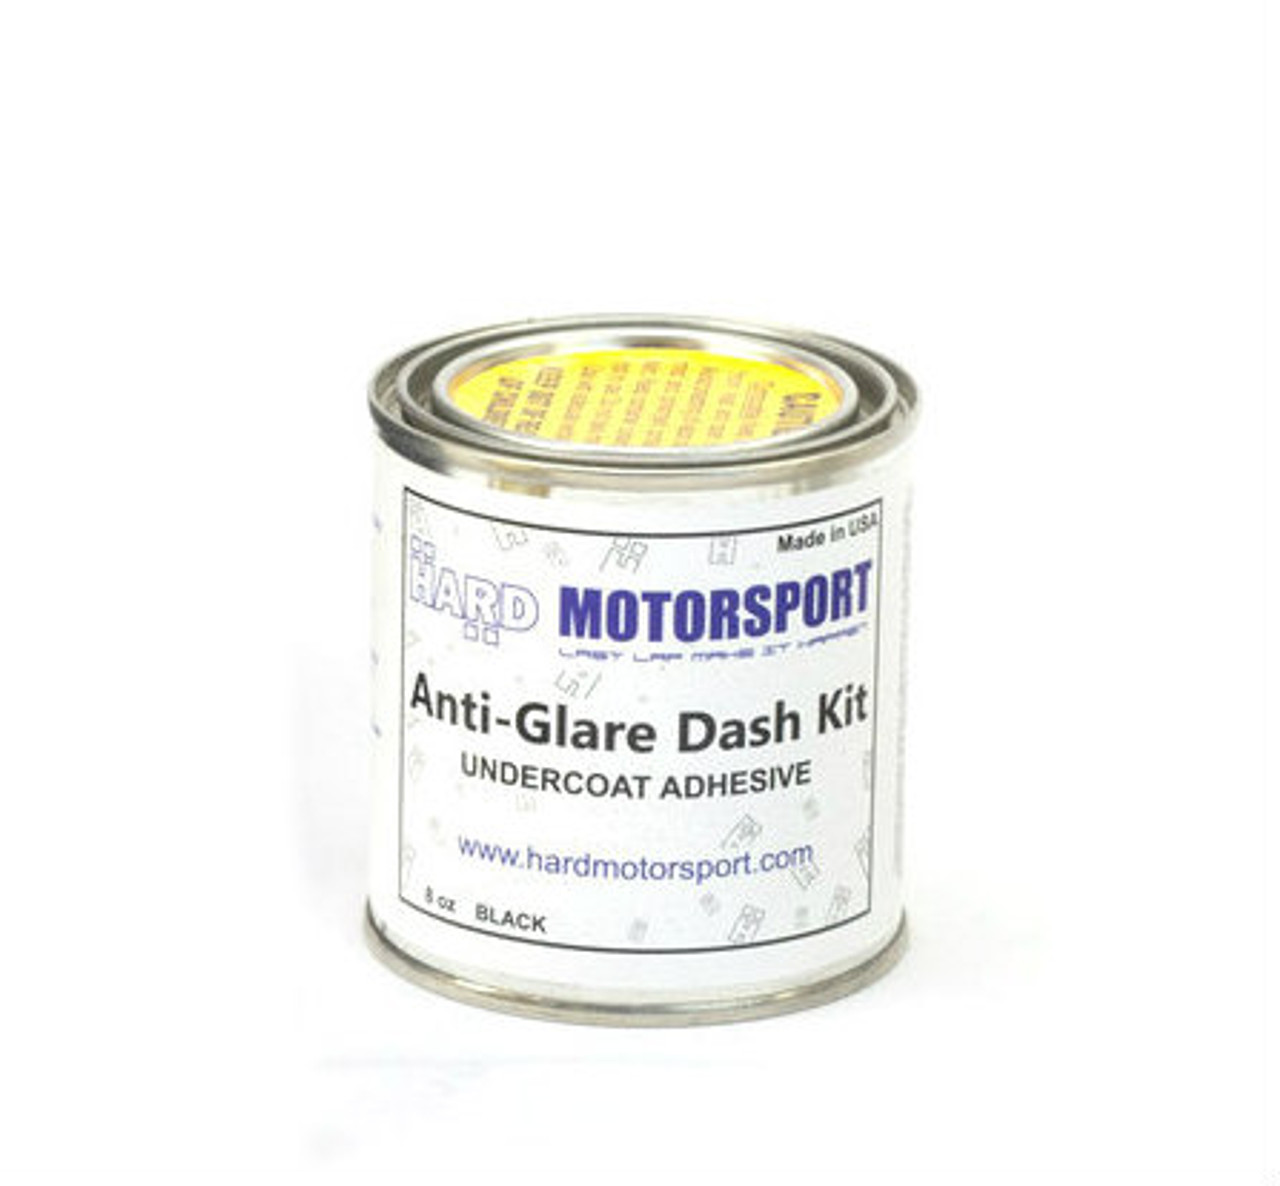 HARD Motorsport Suede Anti-Glare Dash Flocking Adhesive